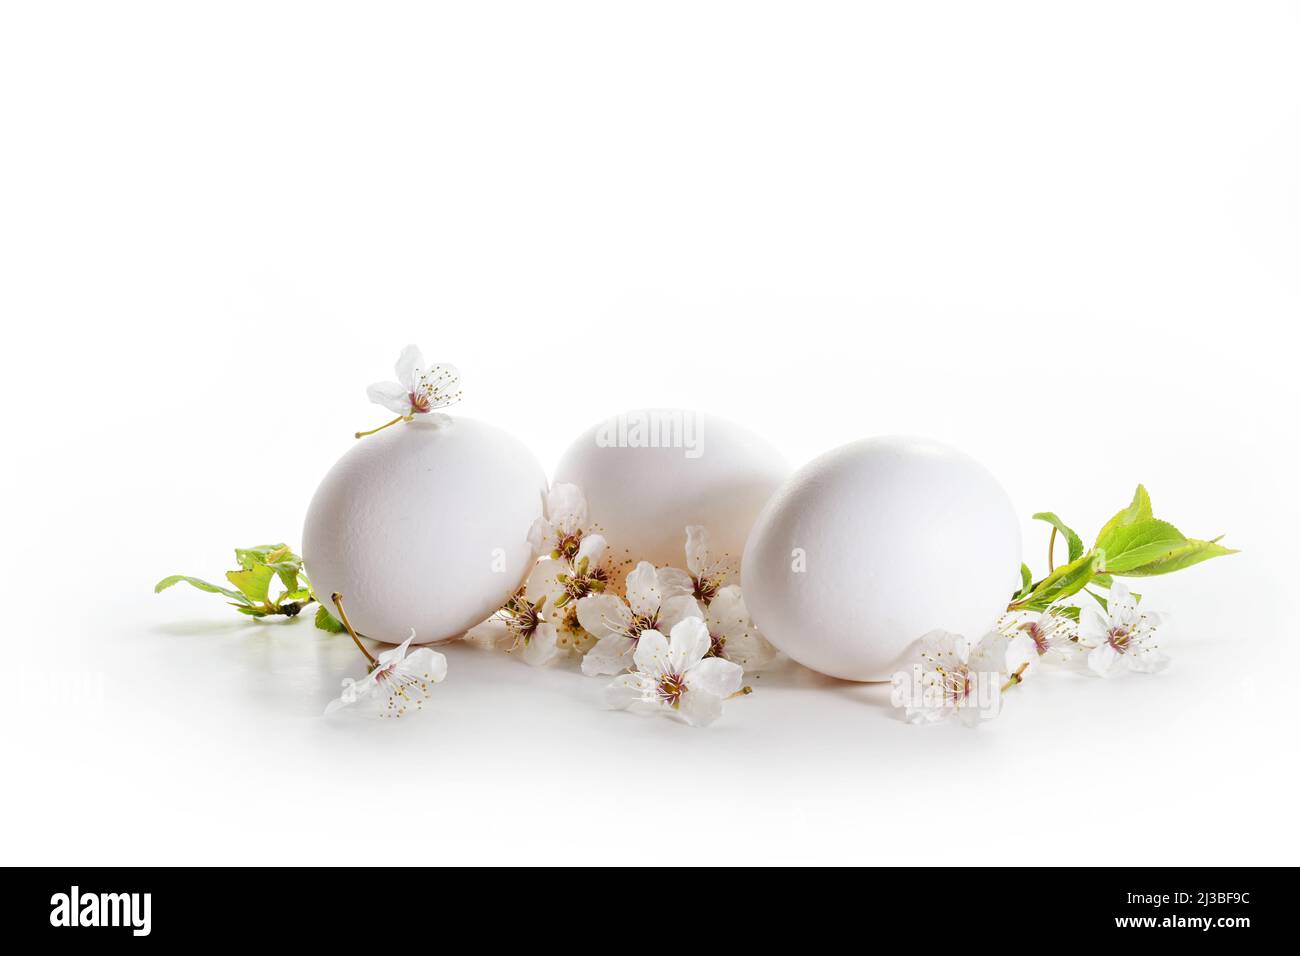 Trois œufs et fleurs de cerisier sur fond blanc, carte de vœux Pâques claire avec grand espace de copie, mise au point sélectionnée, profondeur de champ étroite Banque D'Images